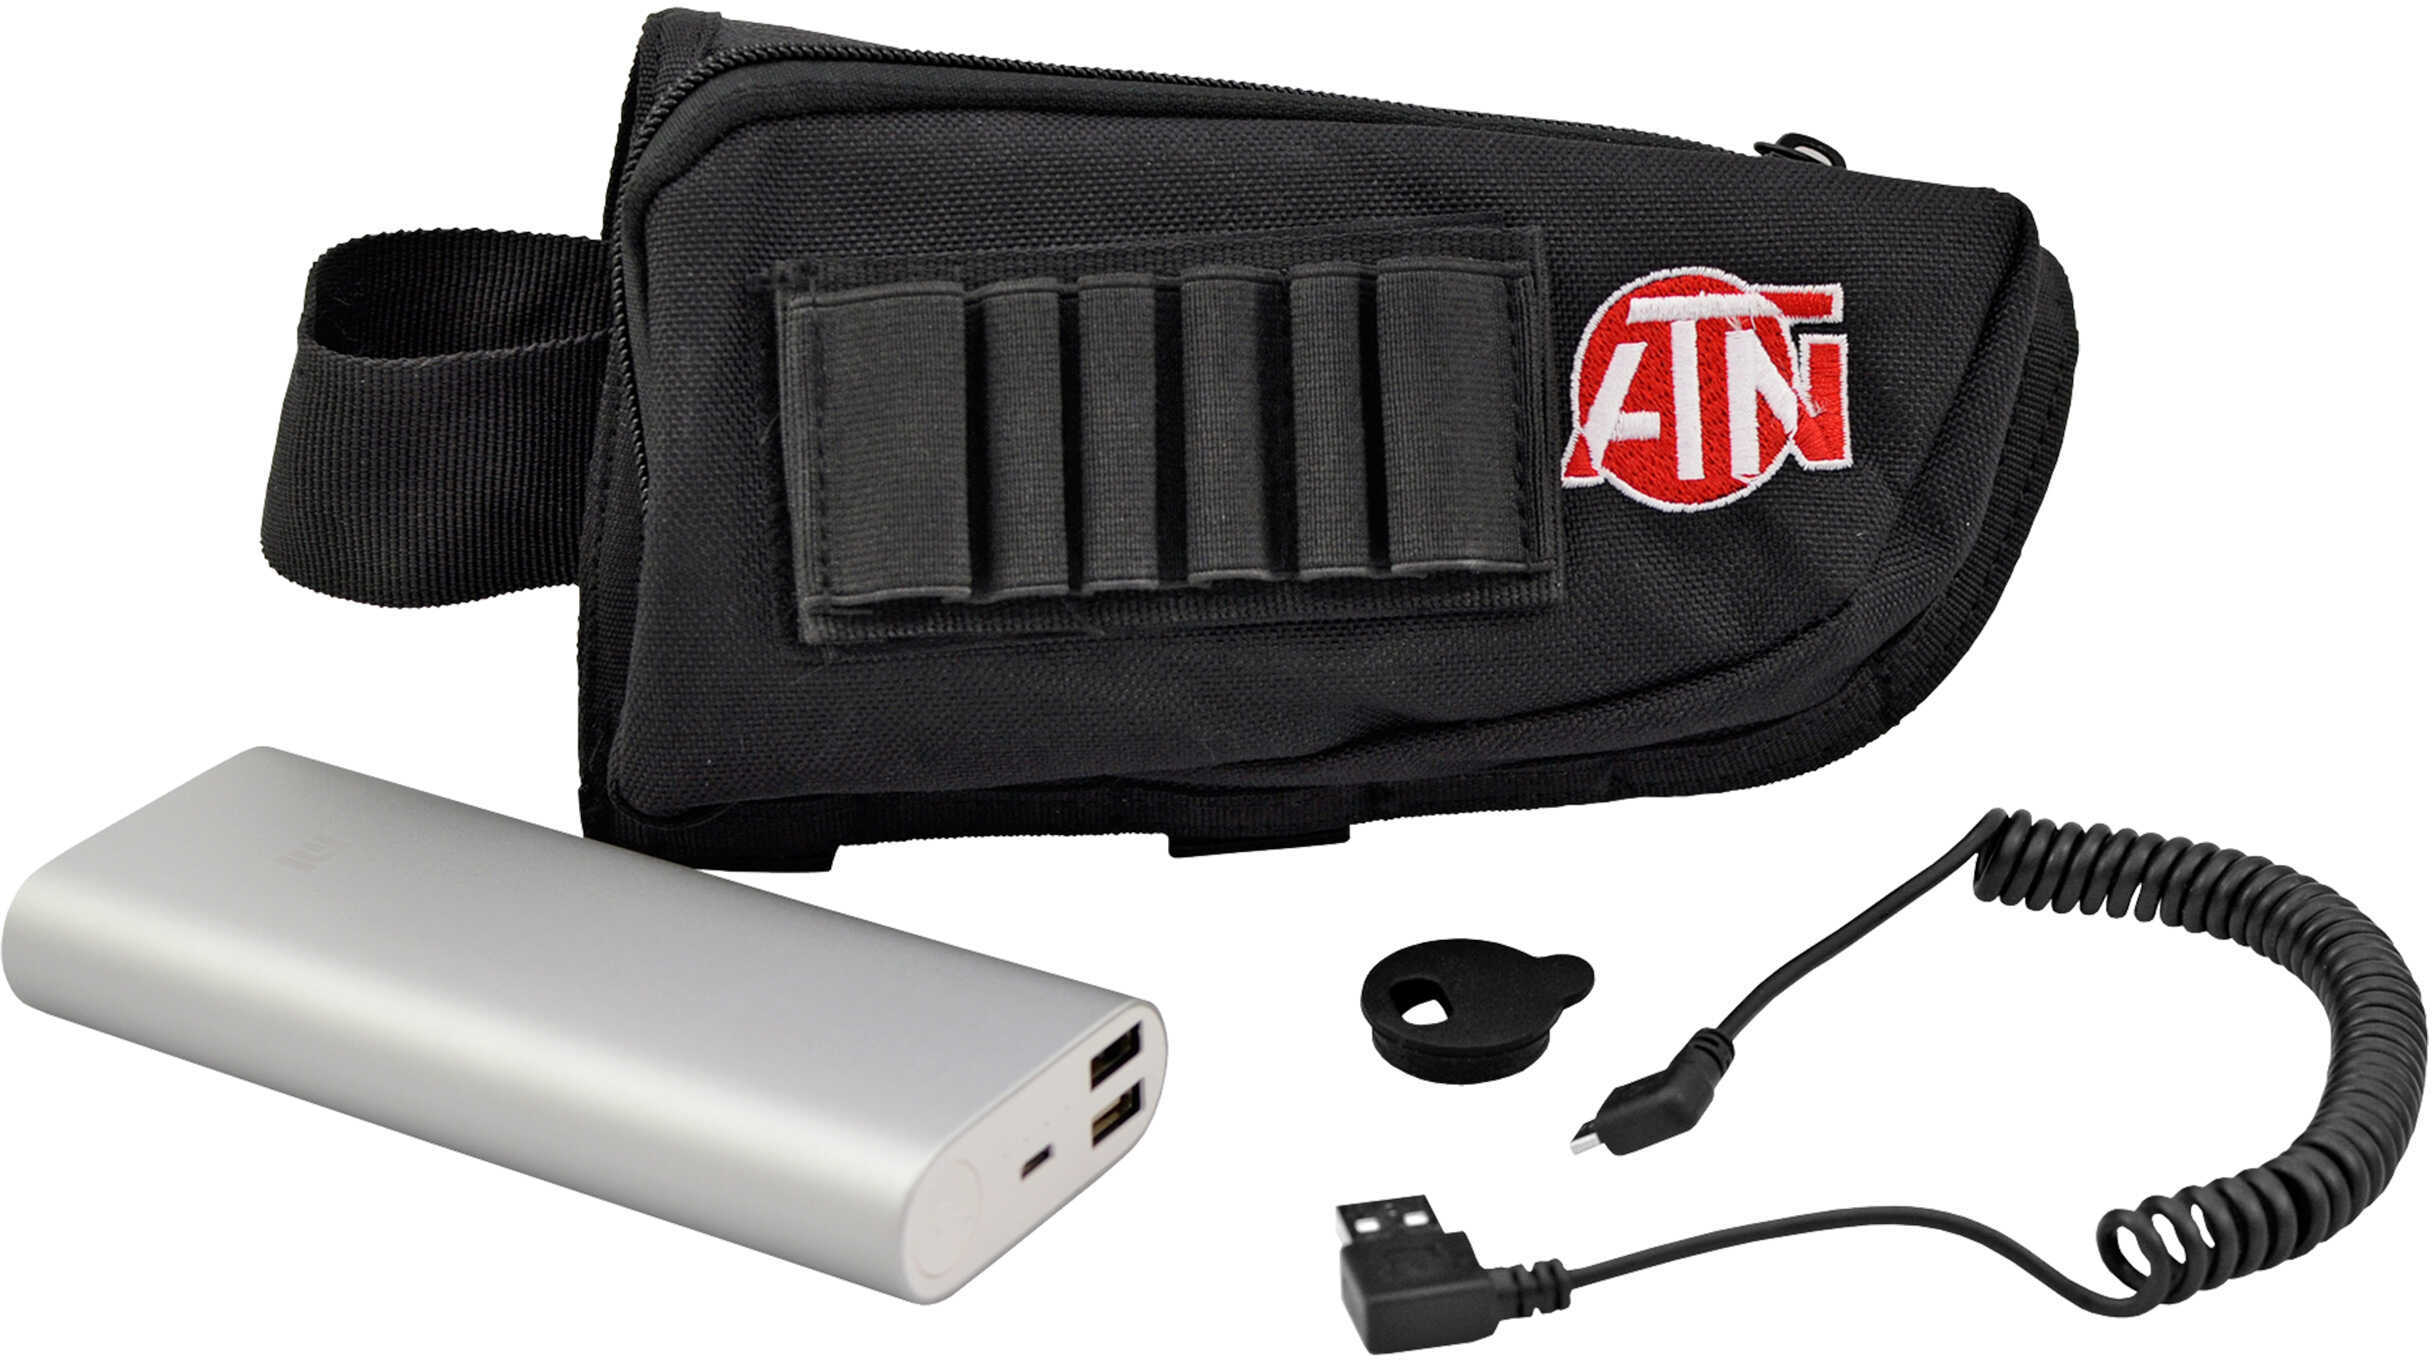 ATN Extended Power Battery Pack Buttstock